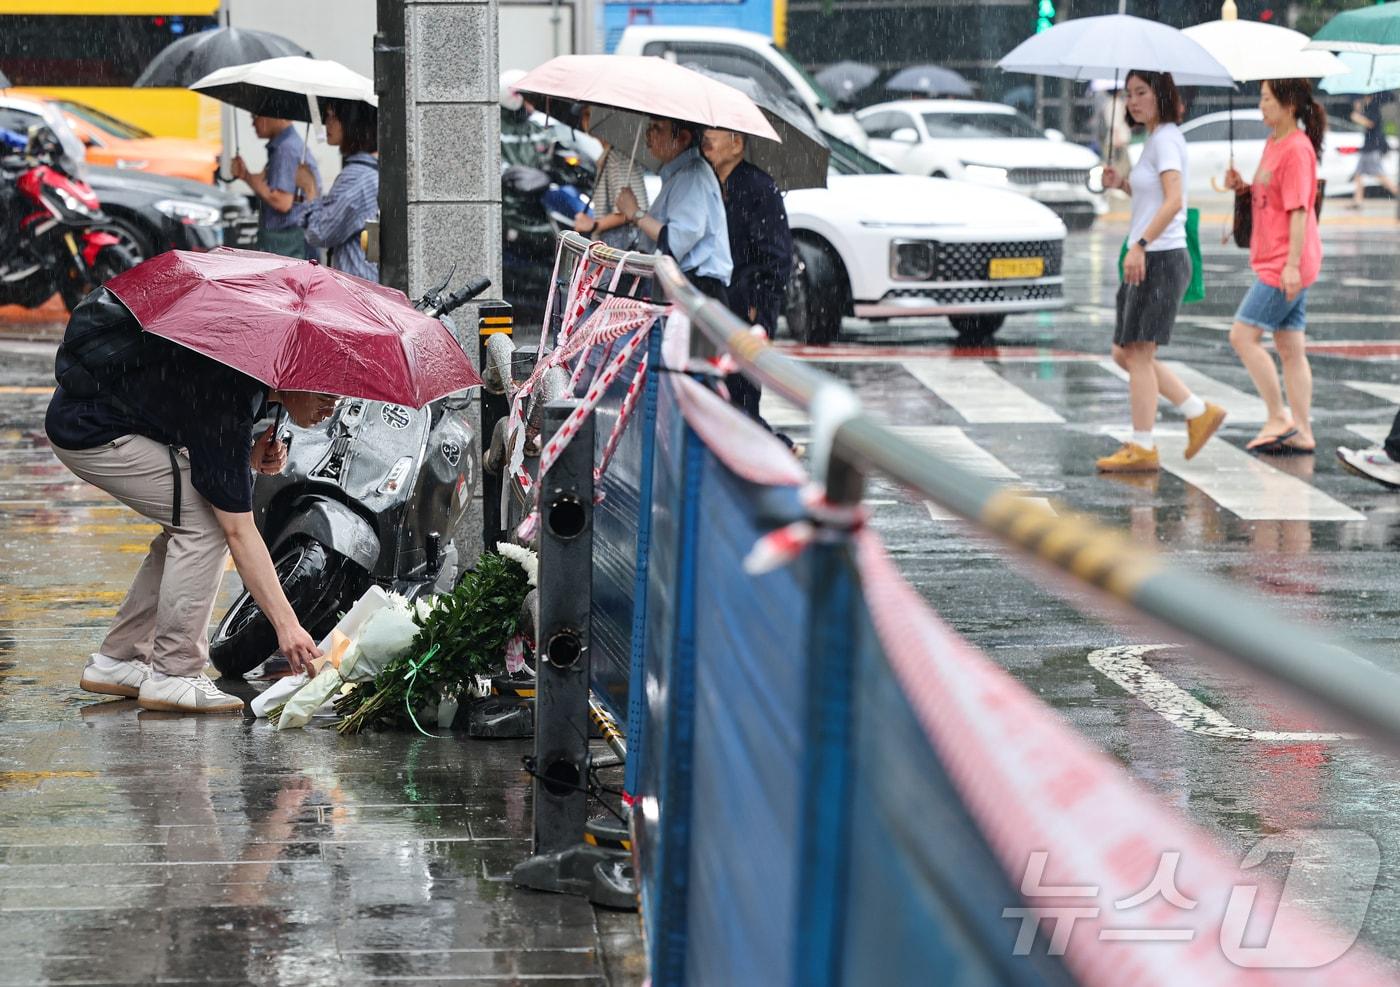 지난밤 승용차가 인도로 돌진해 9명이 사망하는 사고가 발생한 2일 오전 서울 중구 서울시청 인근 교차로 사고현장에서 한 시민이 희생자를 추모하며 헌화를 하고 있다. 이번 사고로 9명이 사망하고 4명&#40;중상 1명·경상 3명&#41;이 다쳤다. 사망자 9명 중 6명은 현장에서 사망했으며, 3명은 병원 이송 도중 숨졌다. 2024.7.2/뉴스1 ⓒ News1 김도우 기자